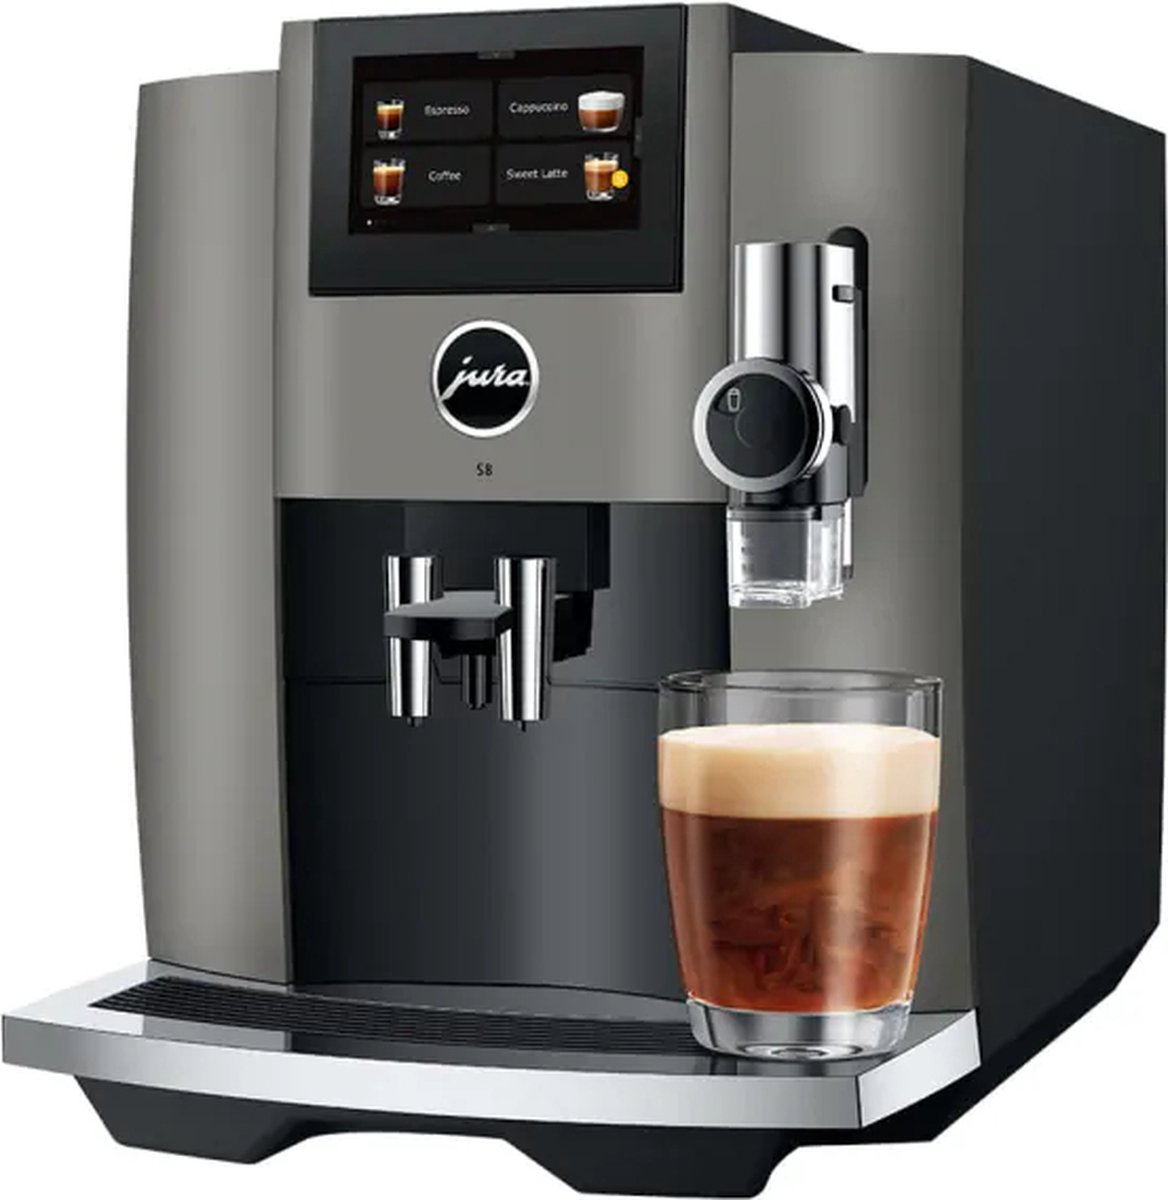 JURA S8 - Volautomatische espressomachine - Dark Inox - EB - incl. gratis schoonmaakpakket twv 37,99 en gratis koffiebonen van LUDIQX Koffie